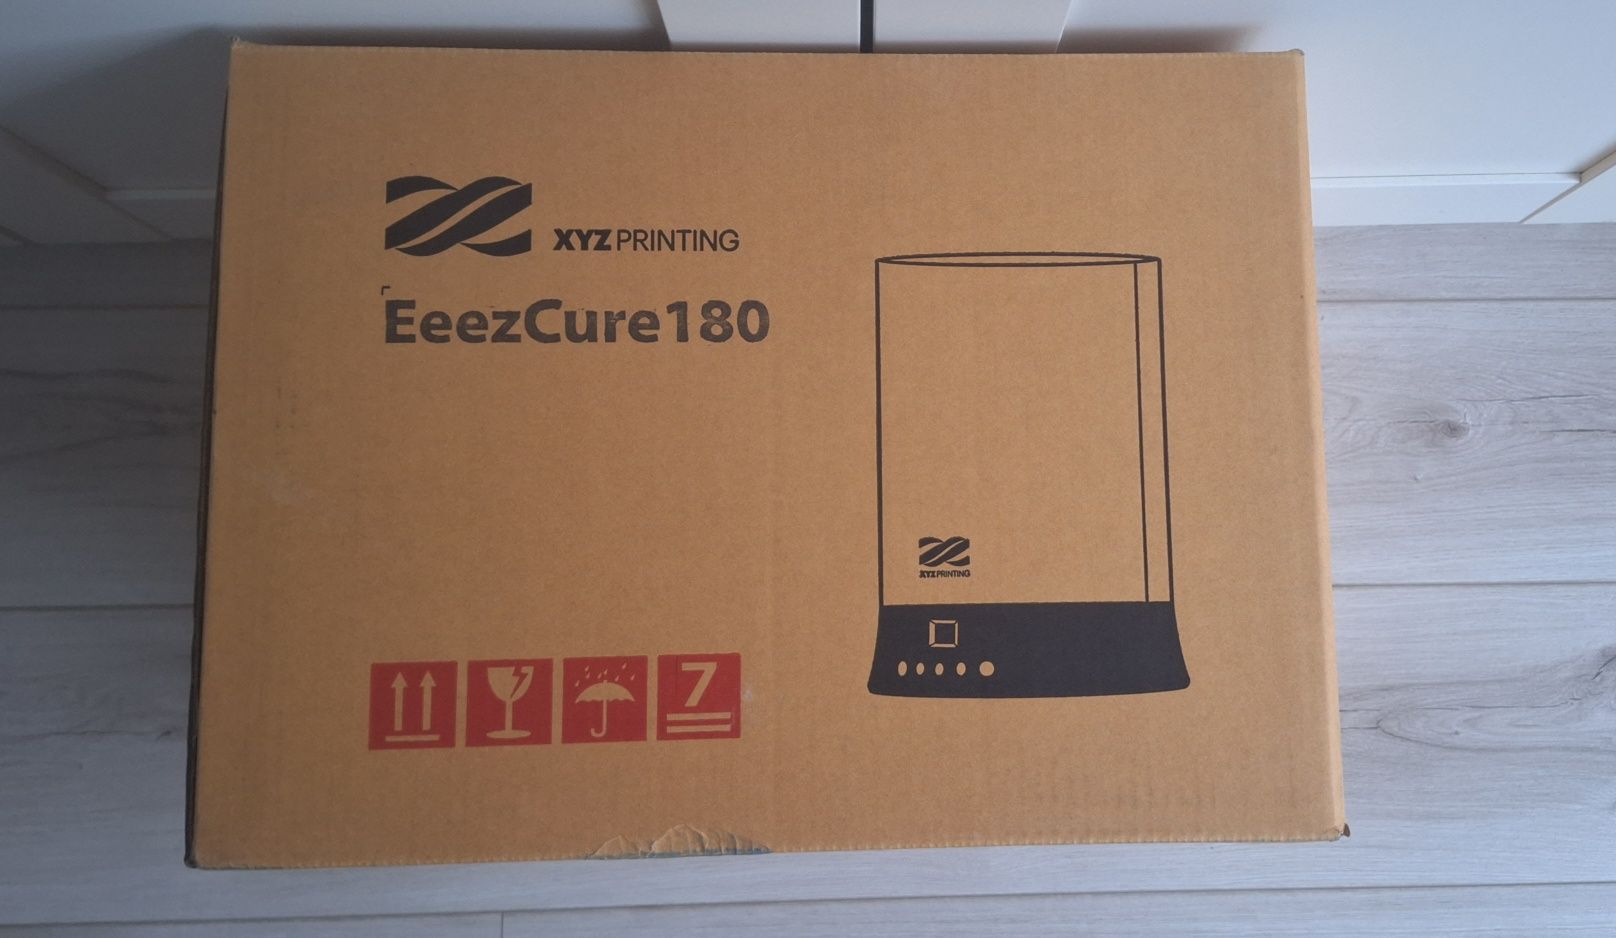 XYZ eeezcure180 komora uv wartość rynkowa 1600zl drukarka 3d